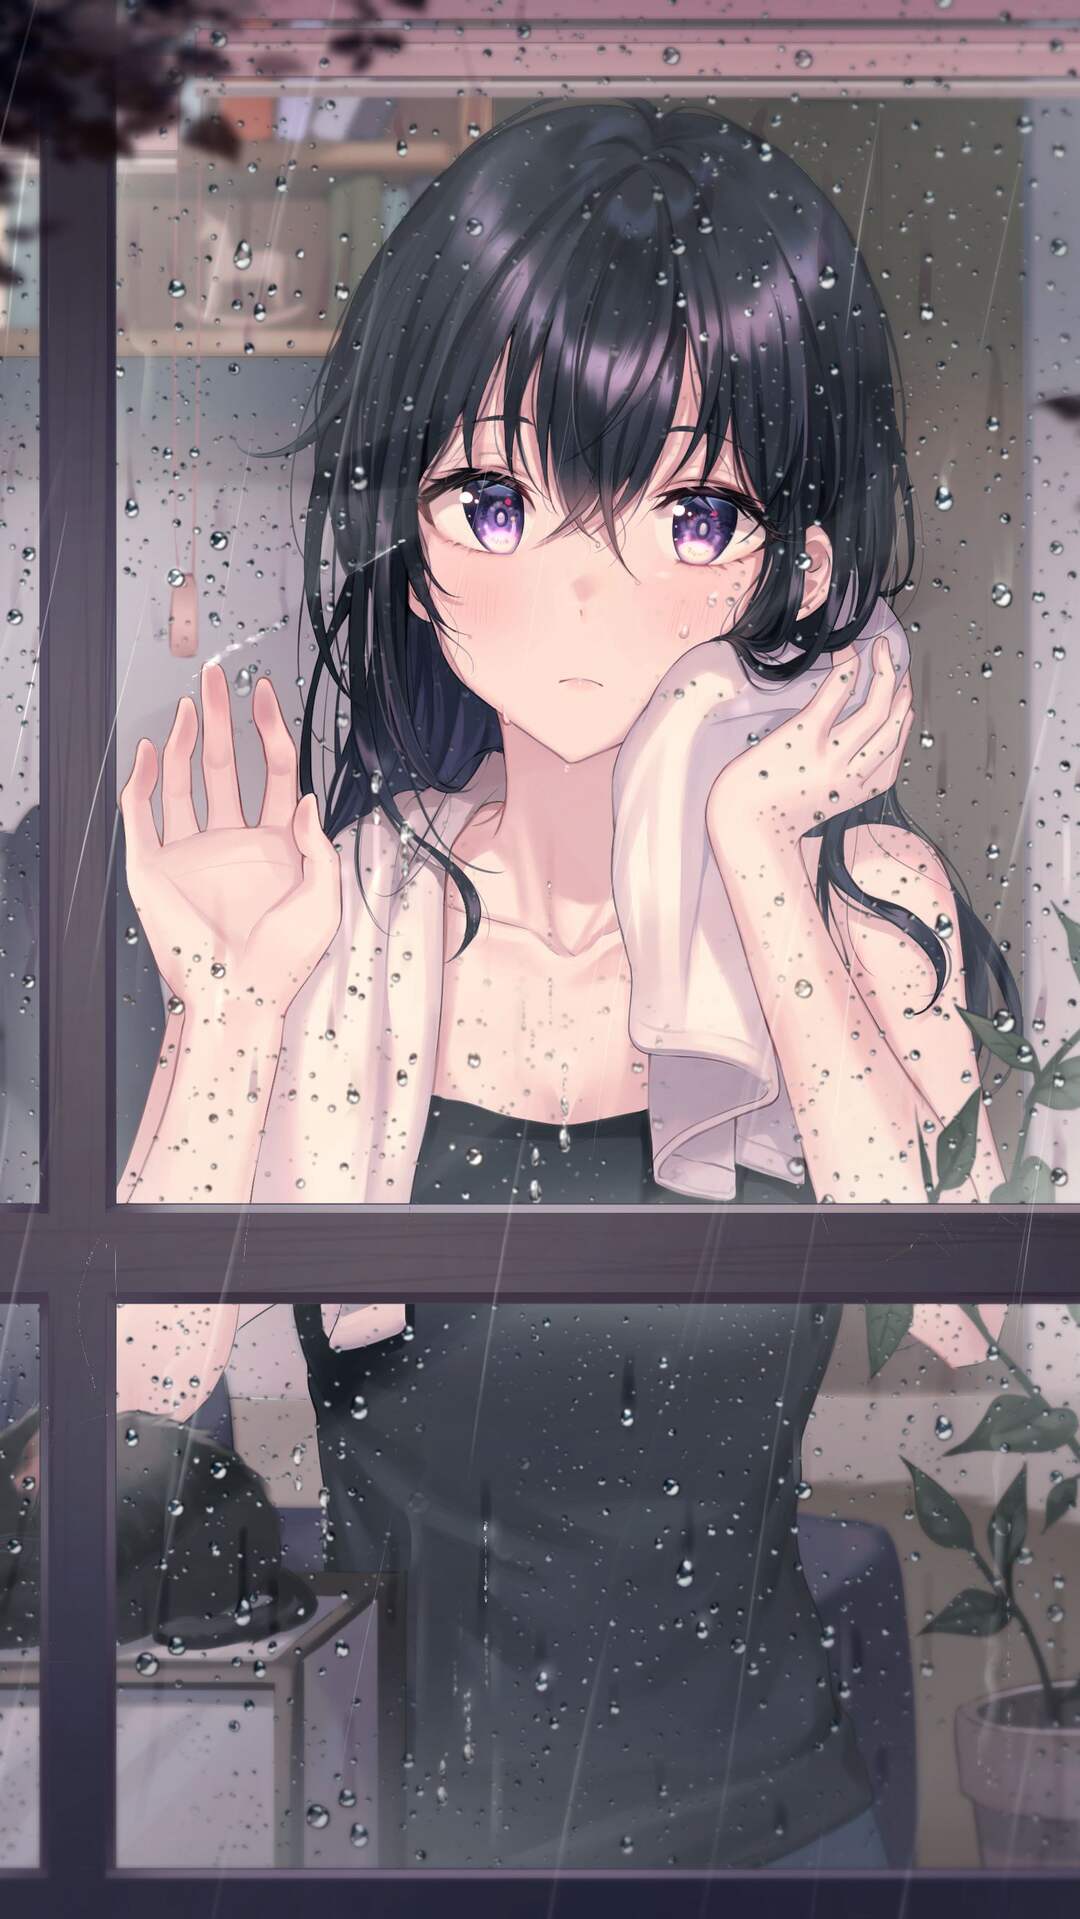 下雨天 单手贴着玻璃窗户 往外看的动漫湿发女孩高清手机壁纸图片